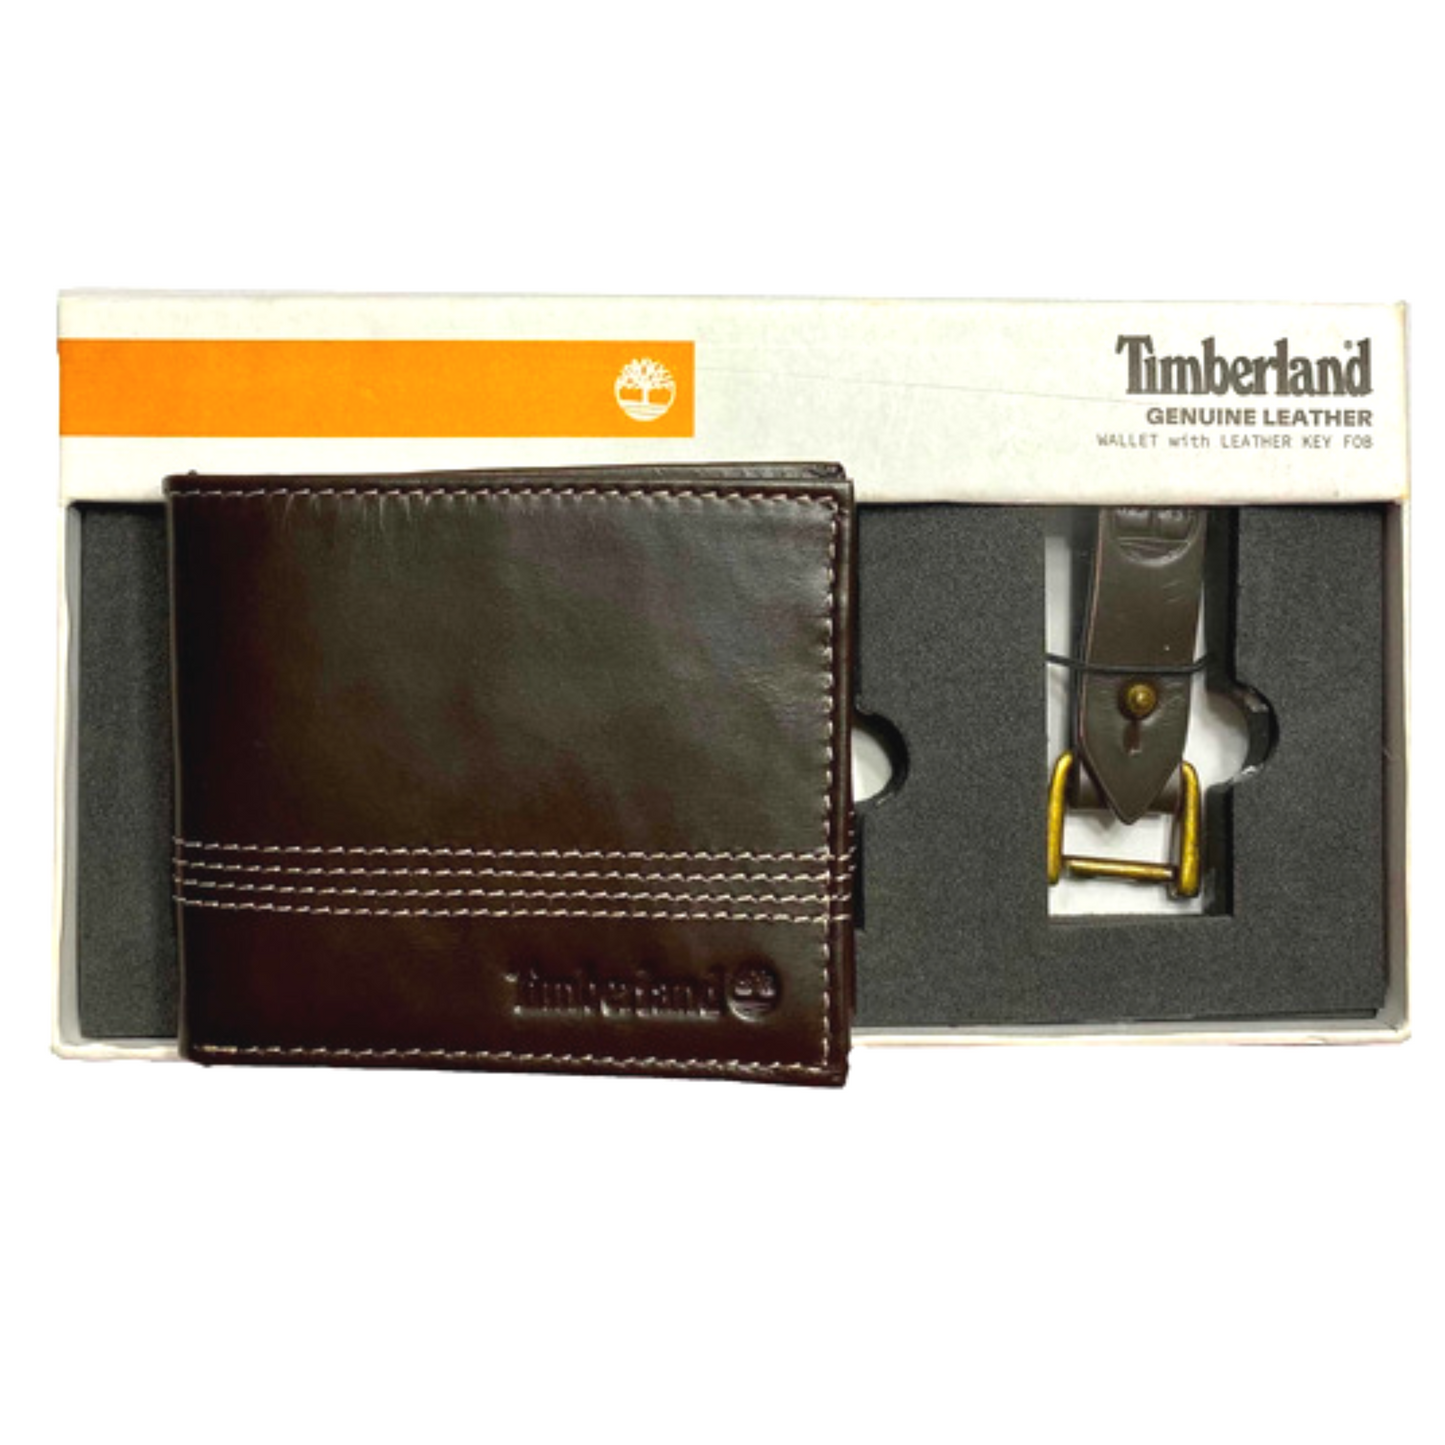 Timberland - Cartera de piel para hombre, diseño de cartera con llavero incluido